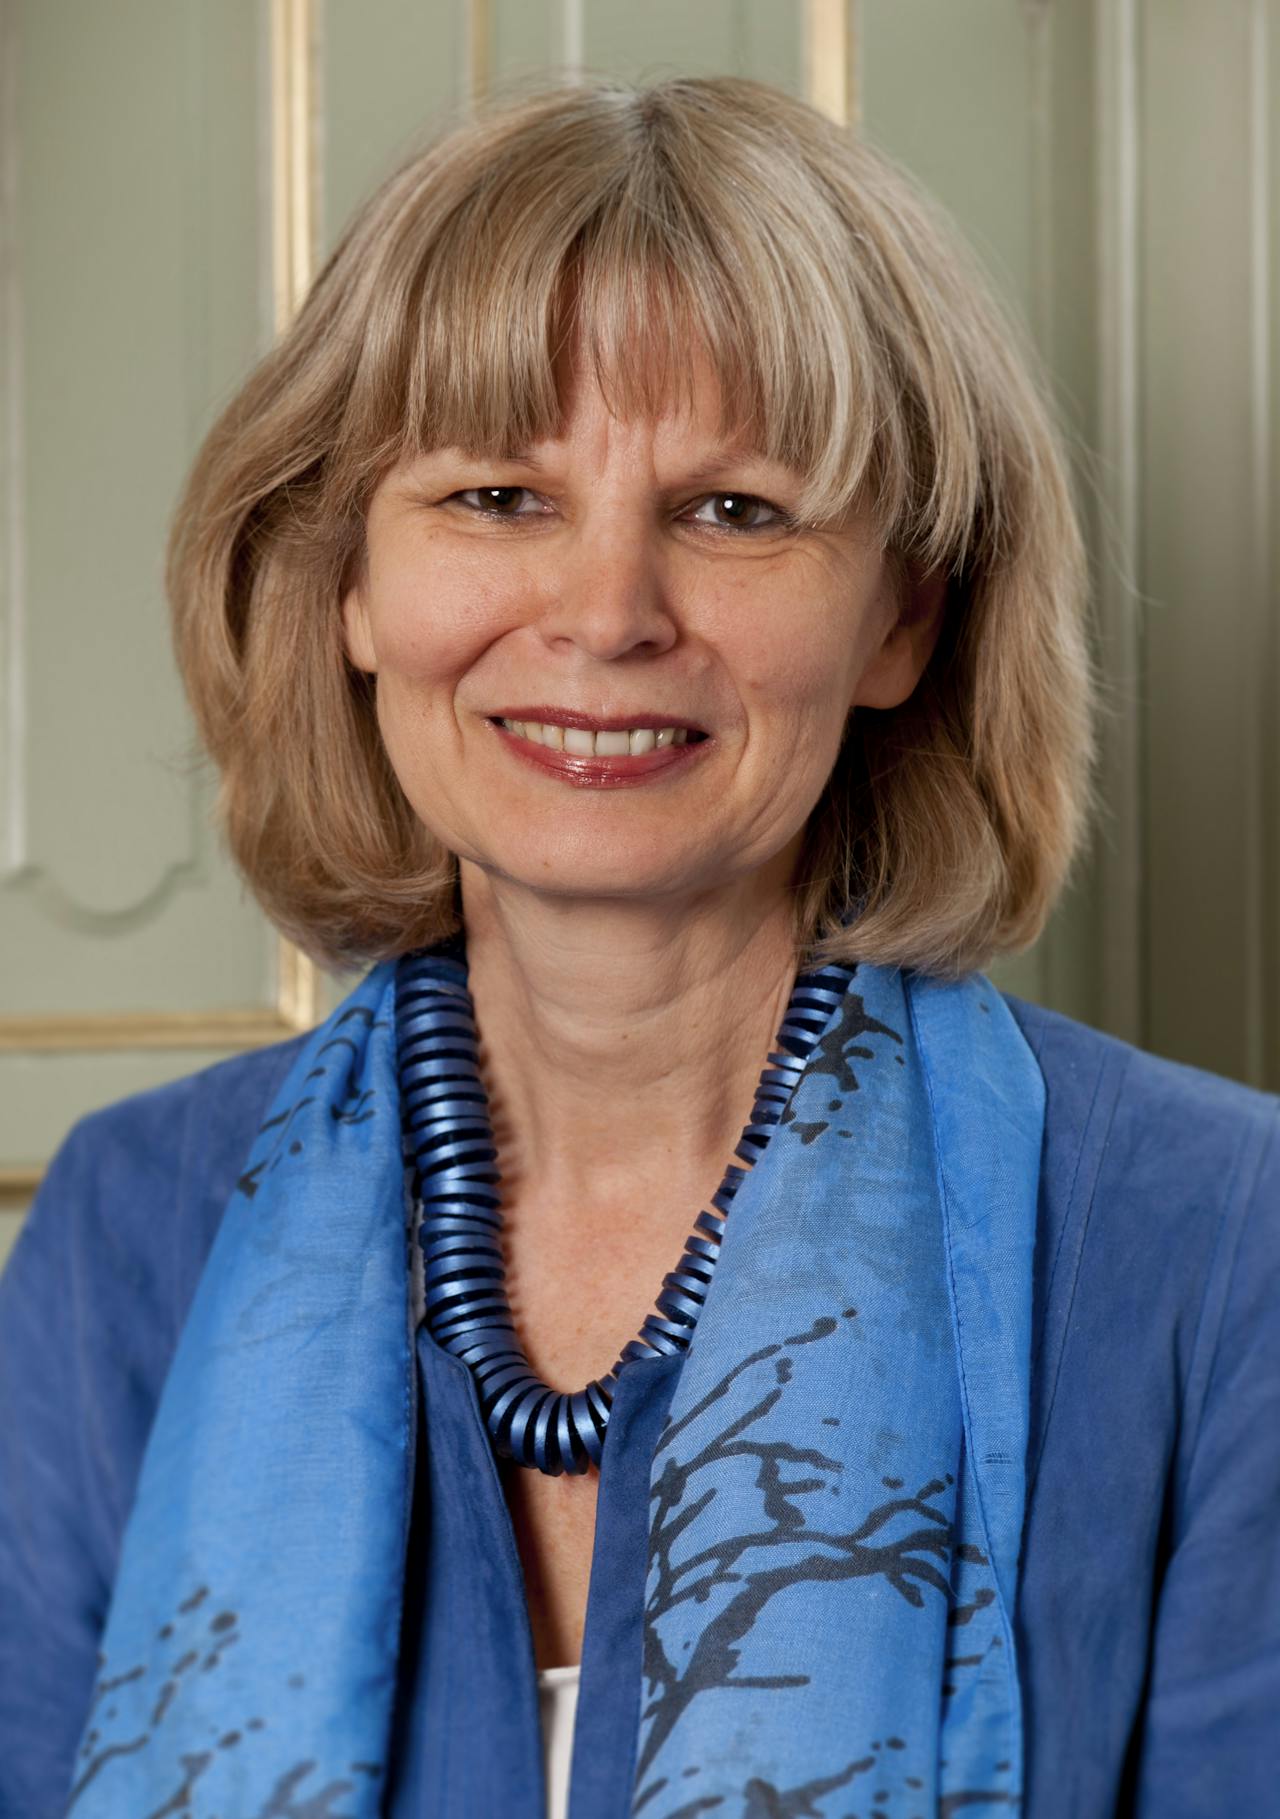 José van Dijck (55) is door maandblad Opzij verkozen tot de meest invloedrijke vrouw van 2016. Zij is de eerste vrouwelijke president van de Koninklijke Nederlandse Akademie van Wetenschappen (KNAW) en hoogleraar vergelijkende mediawetenschappen aan de Universiteit van Amsterdam. (Foto: KNAW)